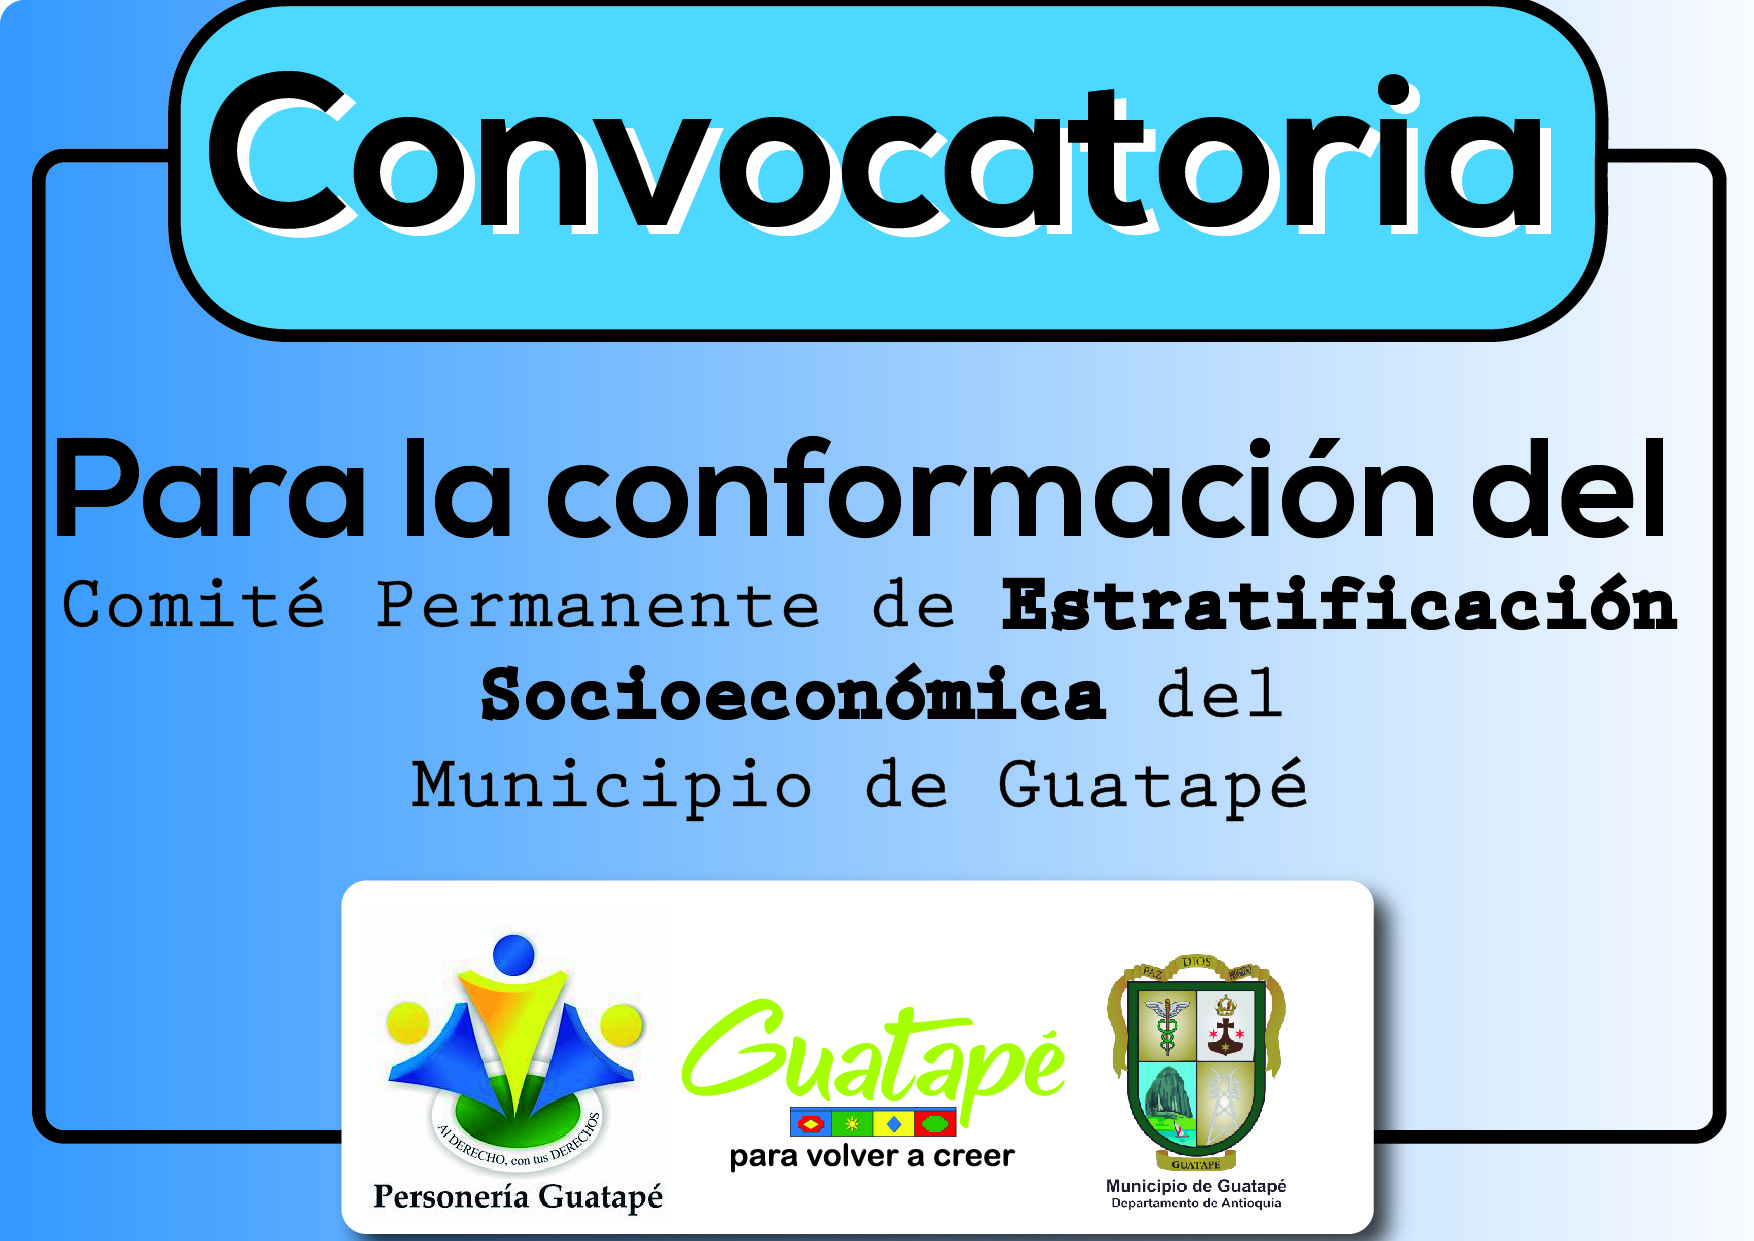 Convocatoria Para la conformación del  Comité Permanente de Estratificación Municipio de Guatapé